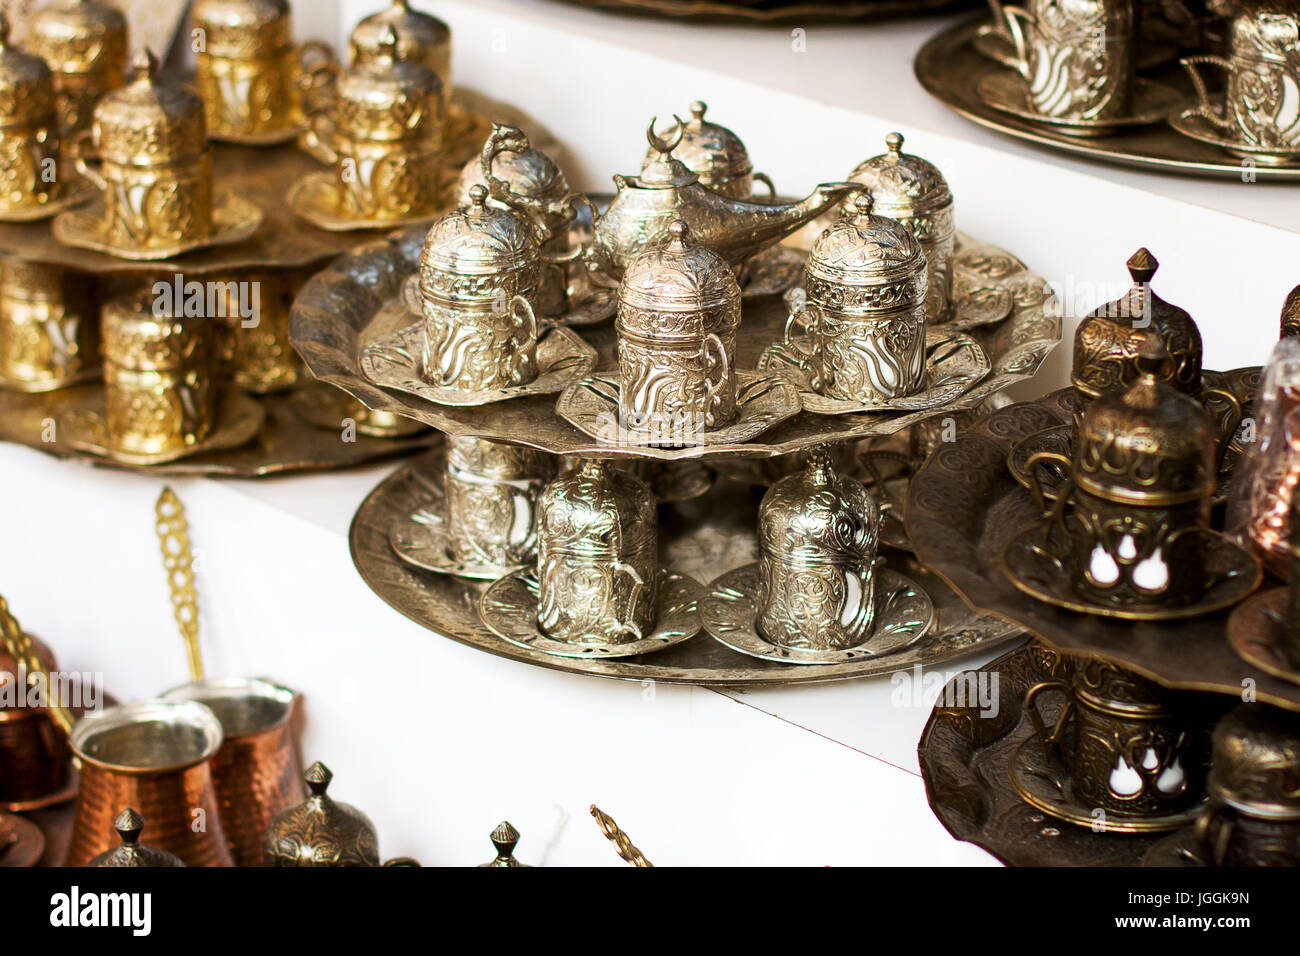 Metal à vaisselle authentique bazar turc, service à café Banque D'Images